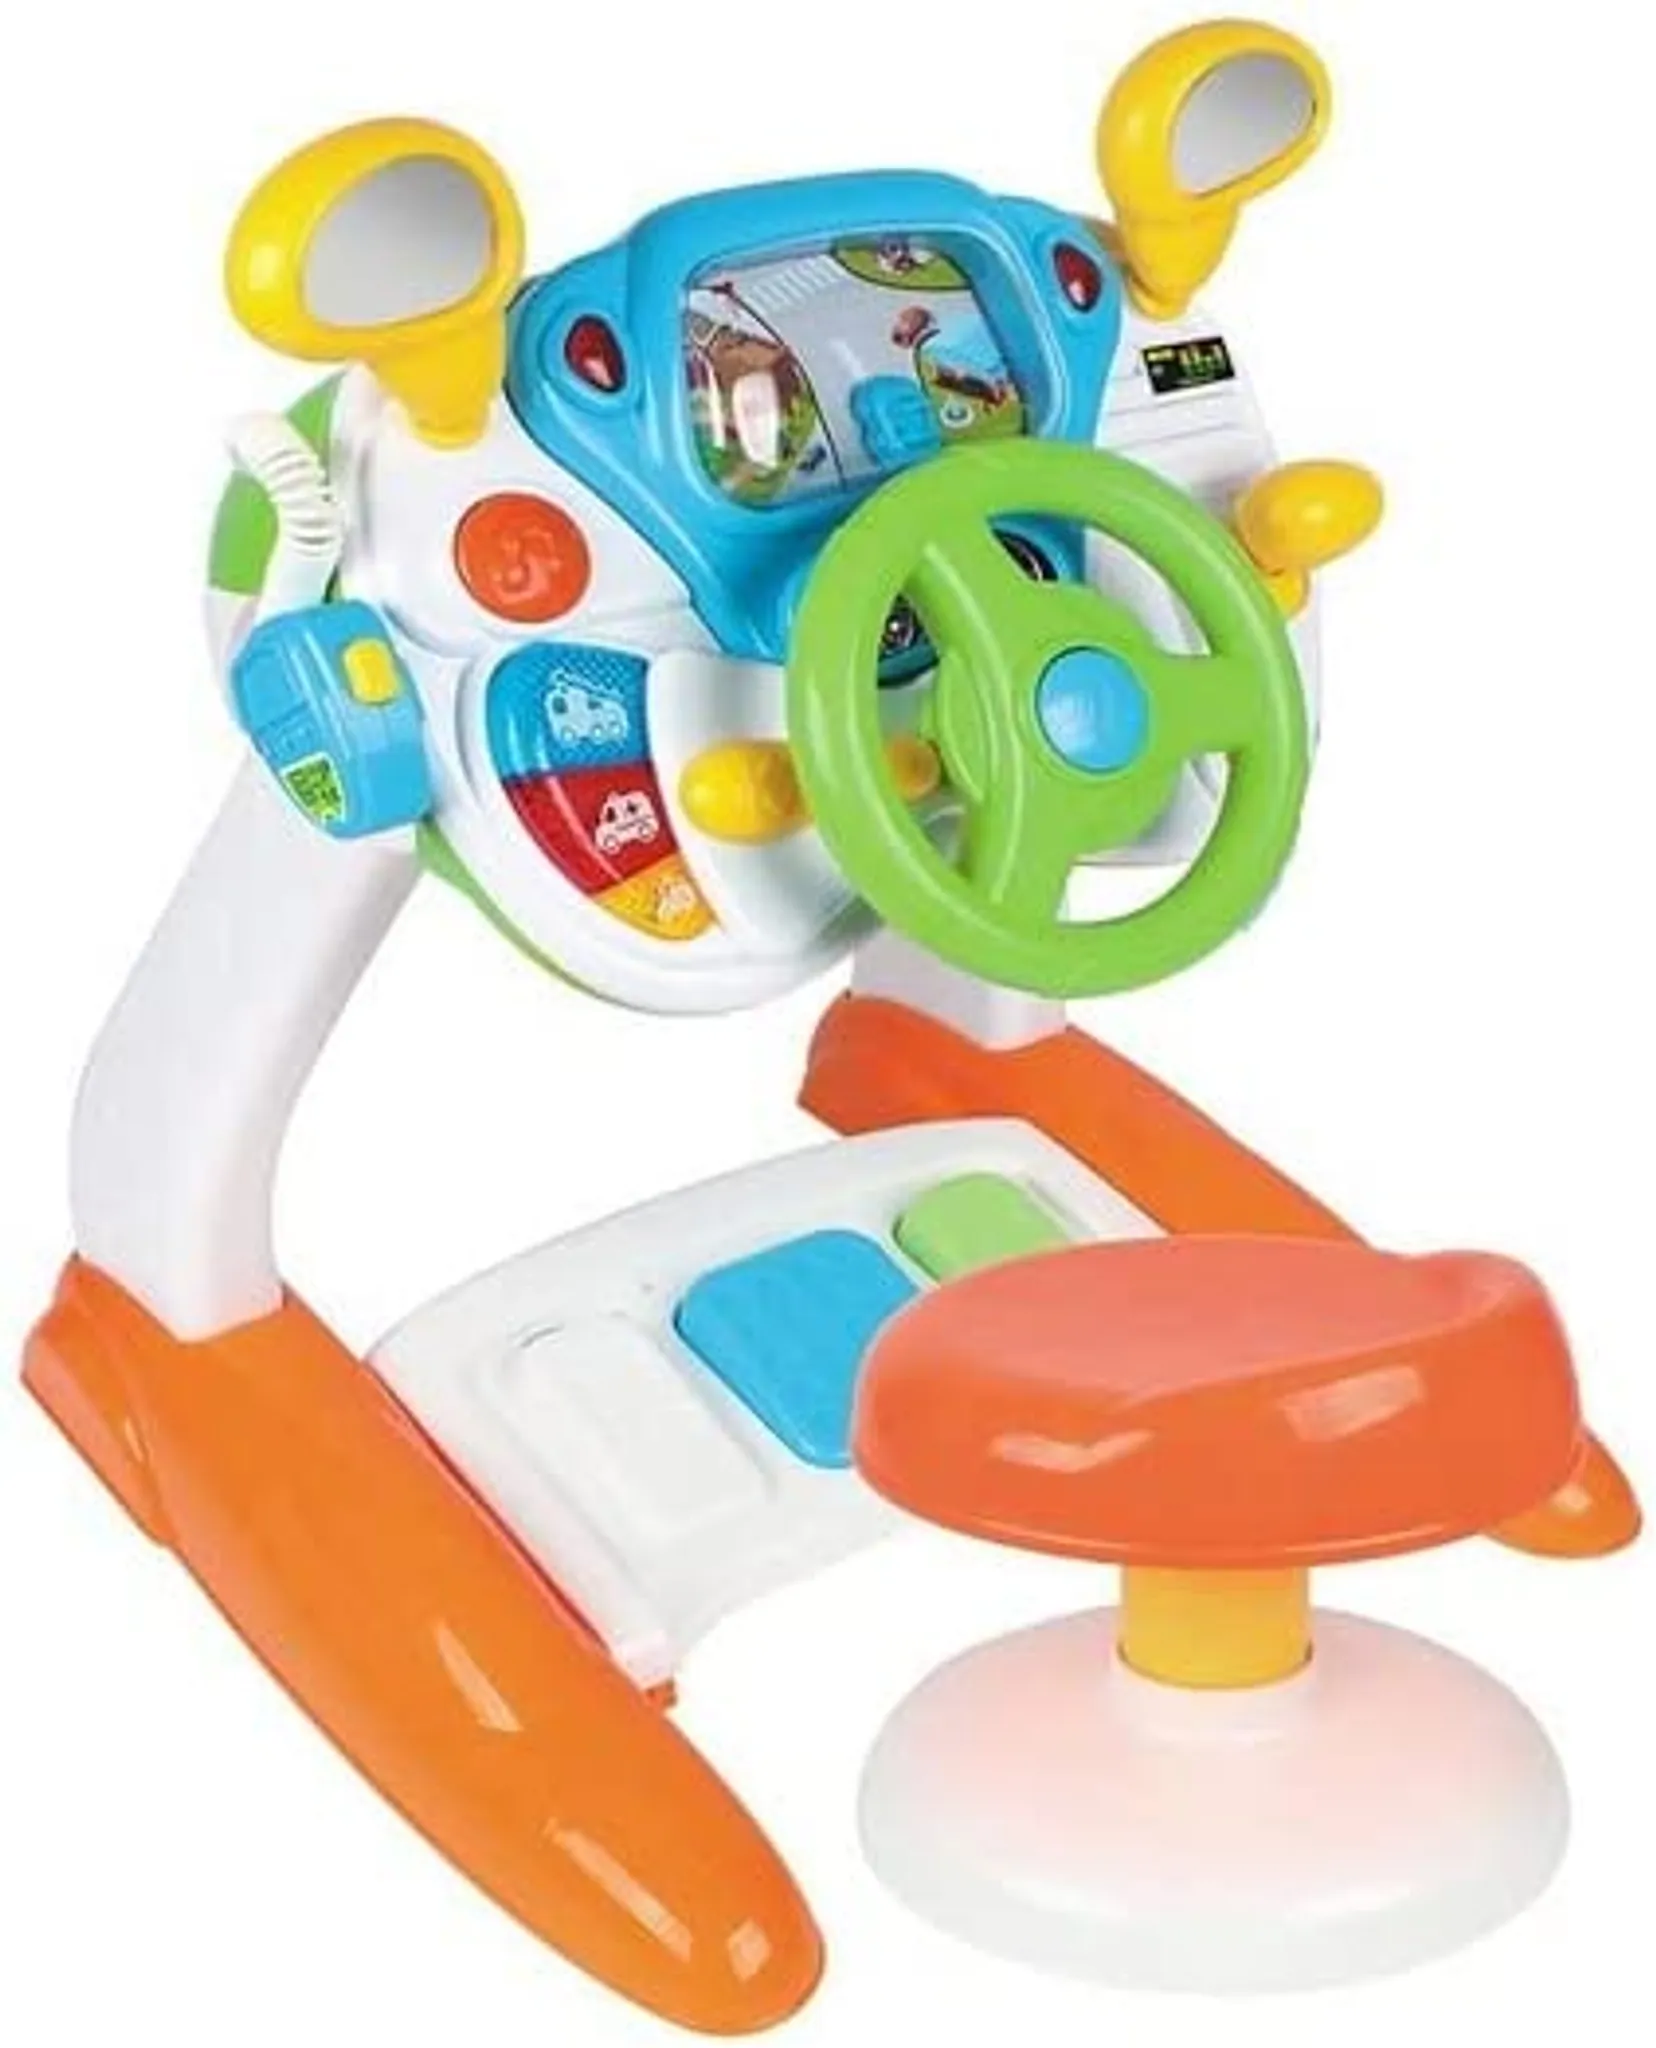 COSTWAY Fahrspielzeug für Kinder